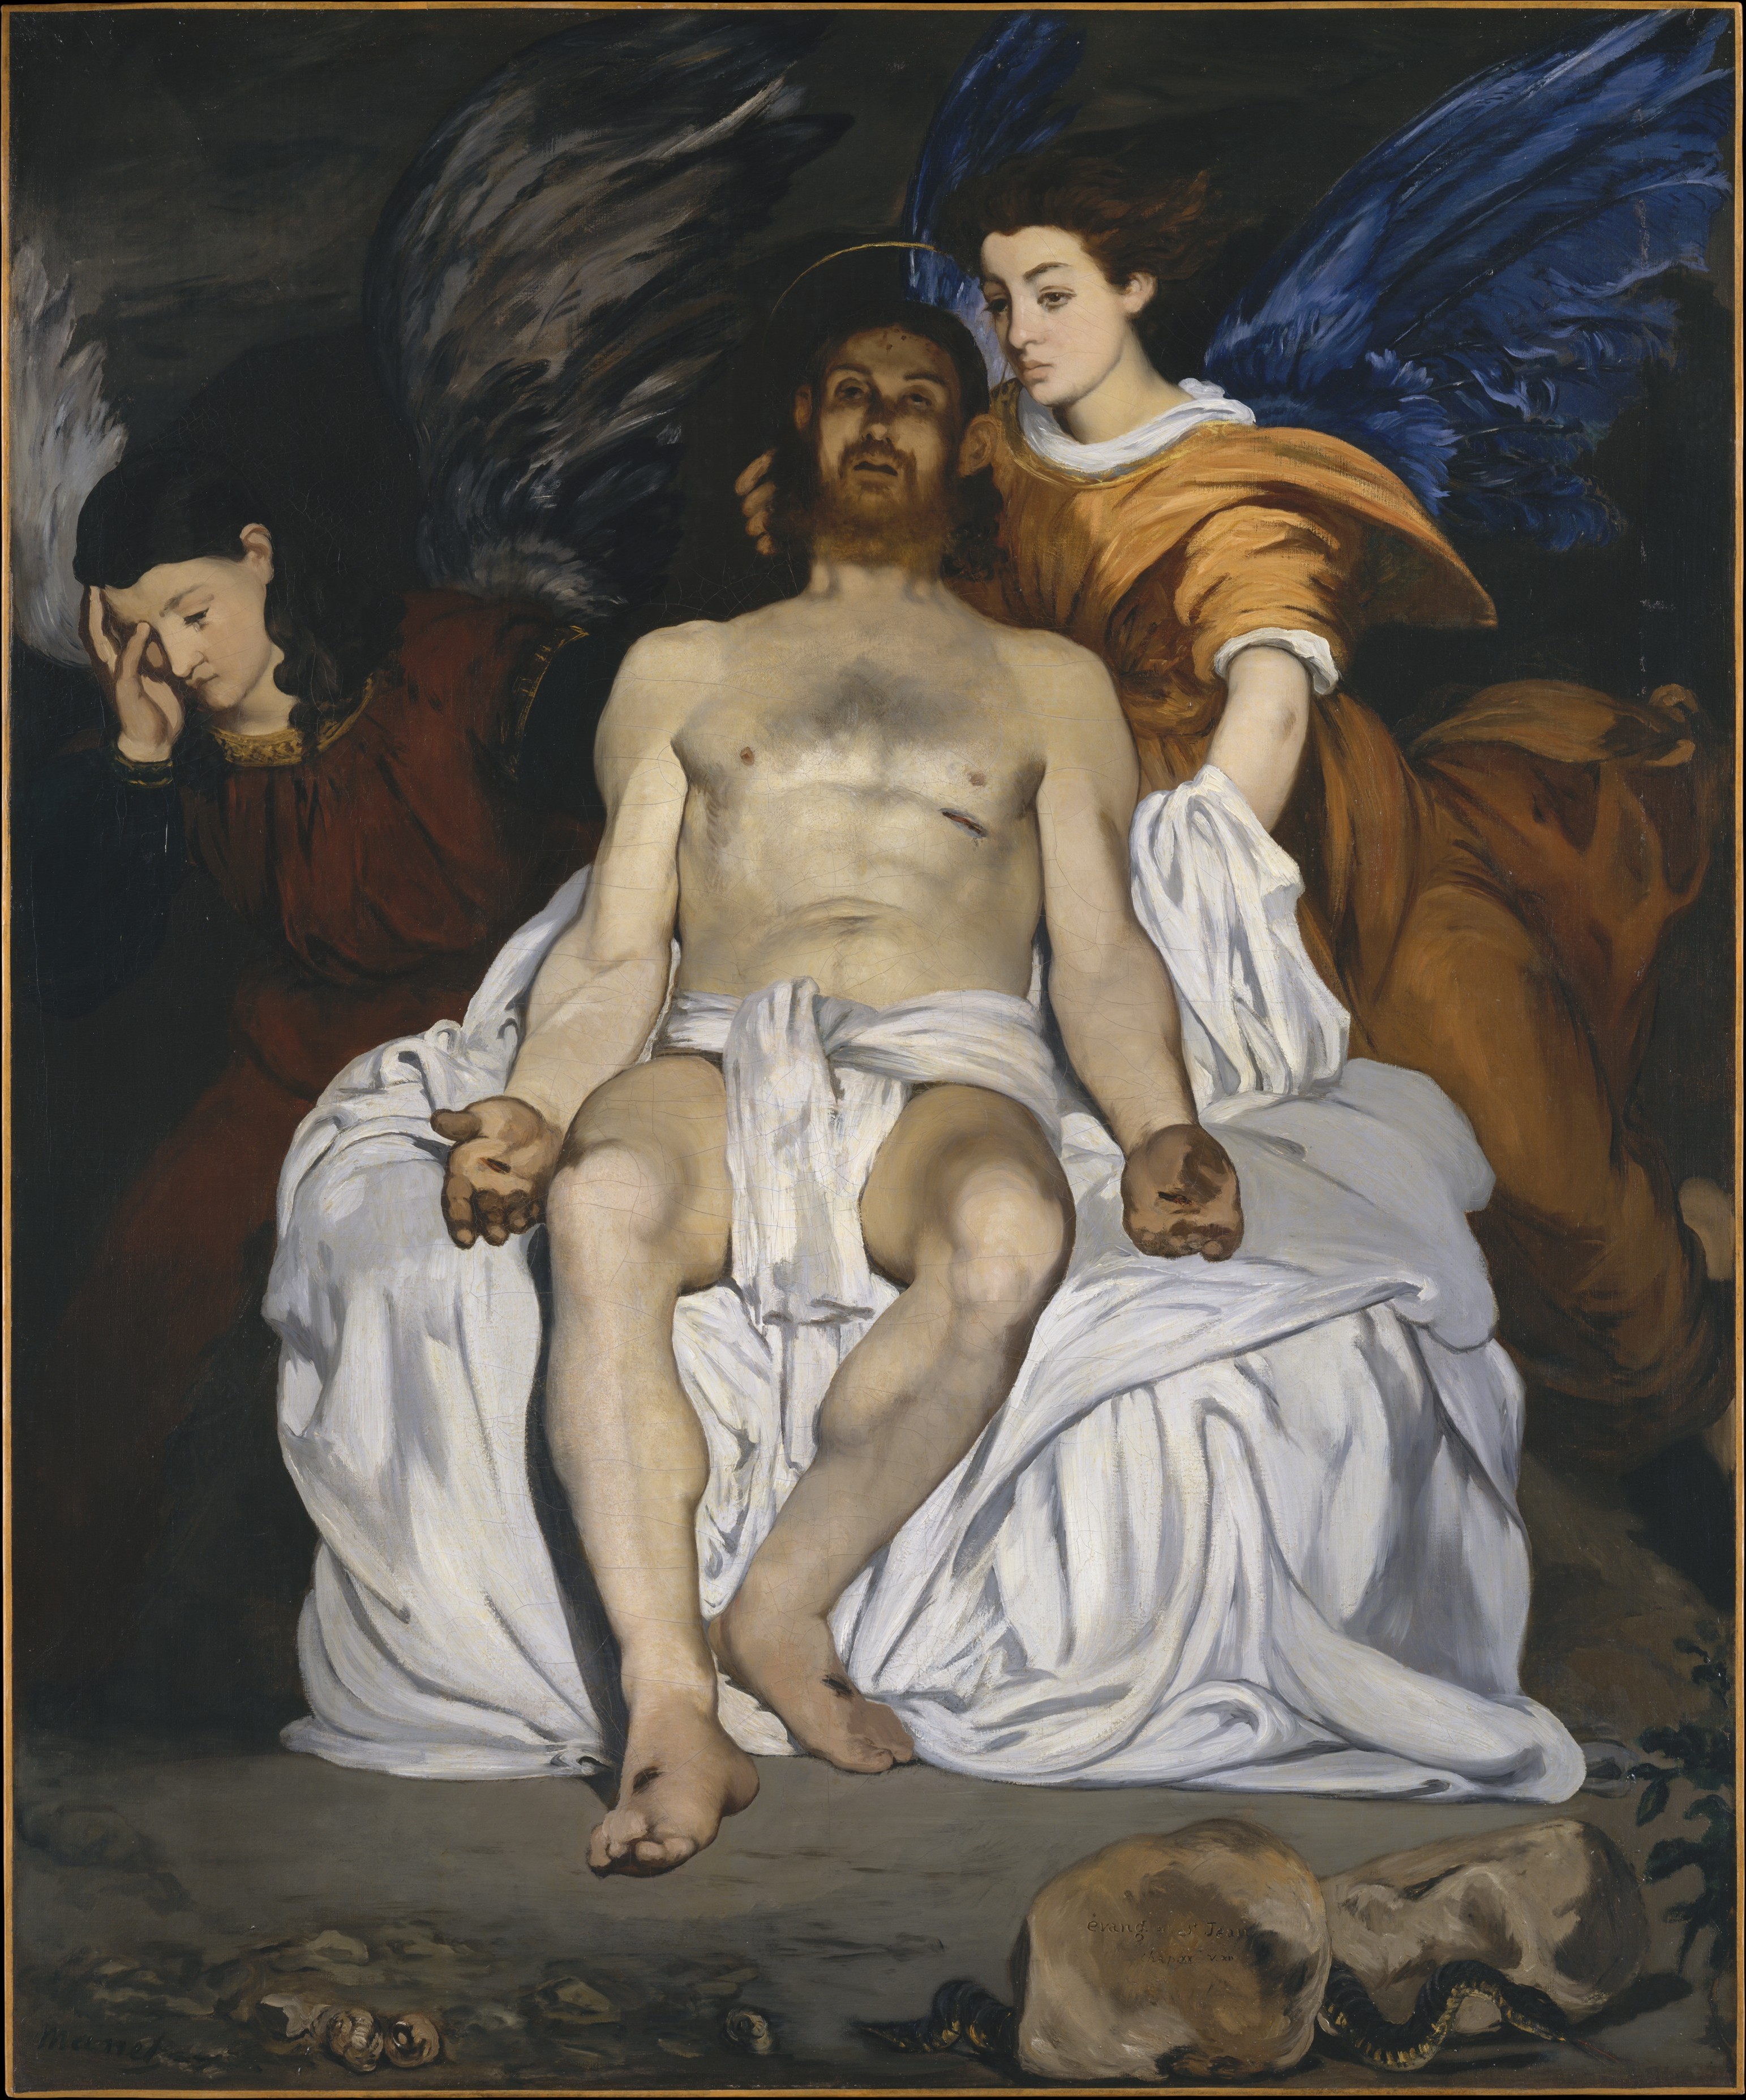 المسيح الميت مع ملائكة by Édouard Manet - 1864 م - 179.4 x 149.9 سم 